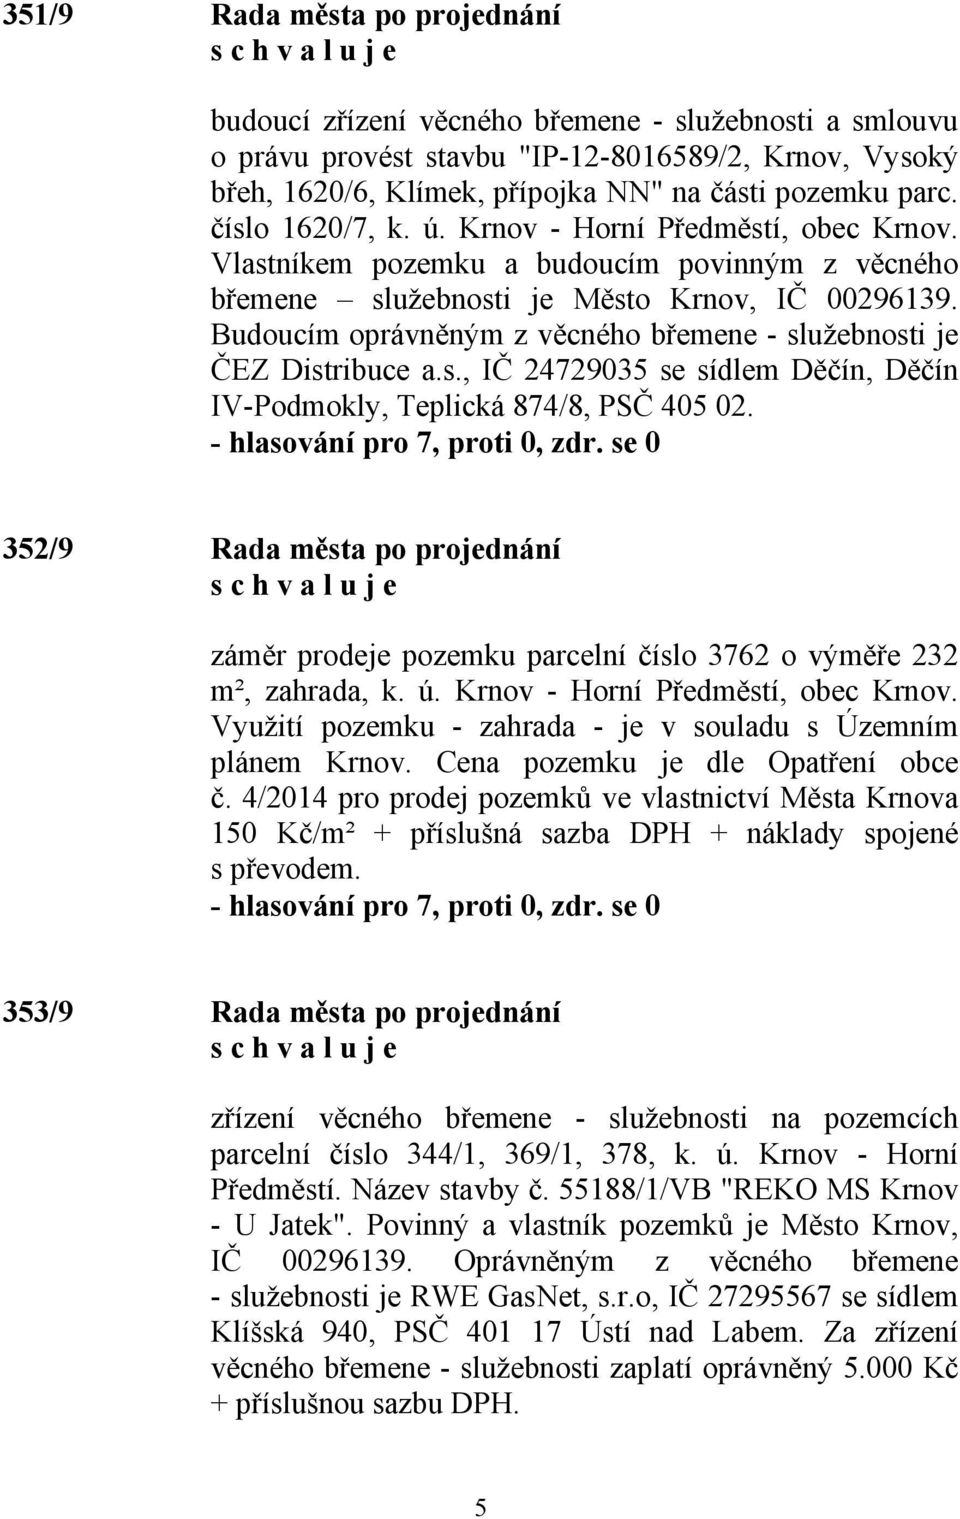 Budoucím oprávněným z věcného břemene - služebnosti je ČEZ Distribuce a.s., IČ 24729035 se sídlem Děčín, Děčín IV-Podmokly, Teplická 874/8, PSČ 405 02.